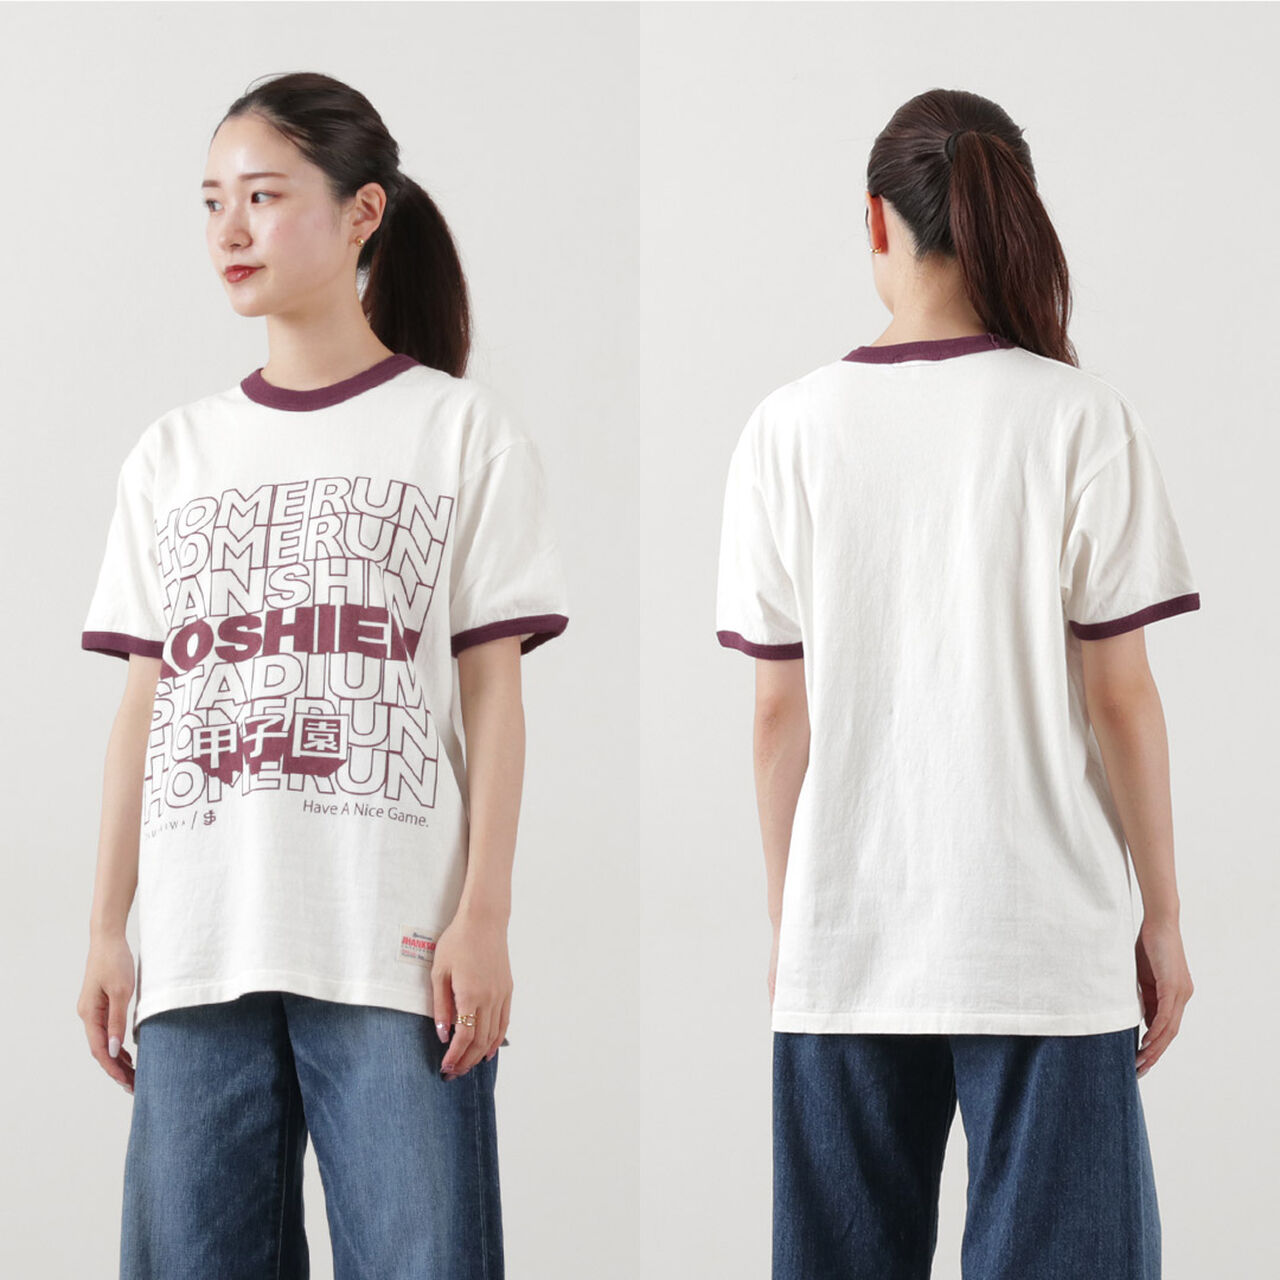 Koshien Home Run T-shirt,, large image number 12